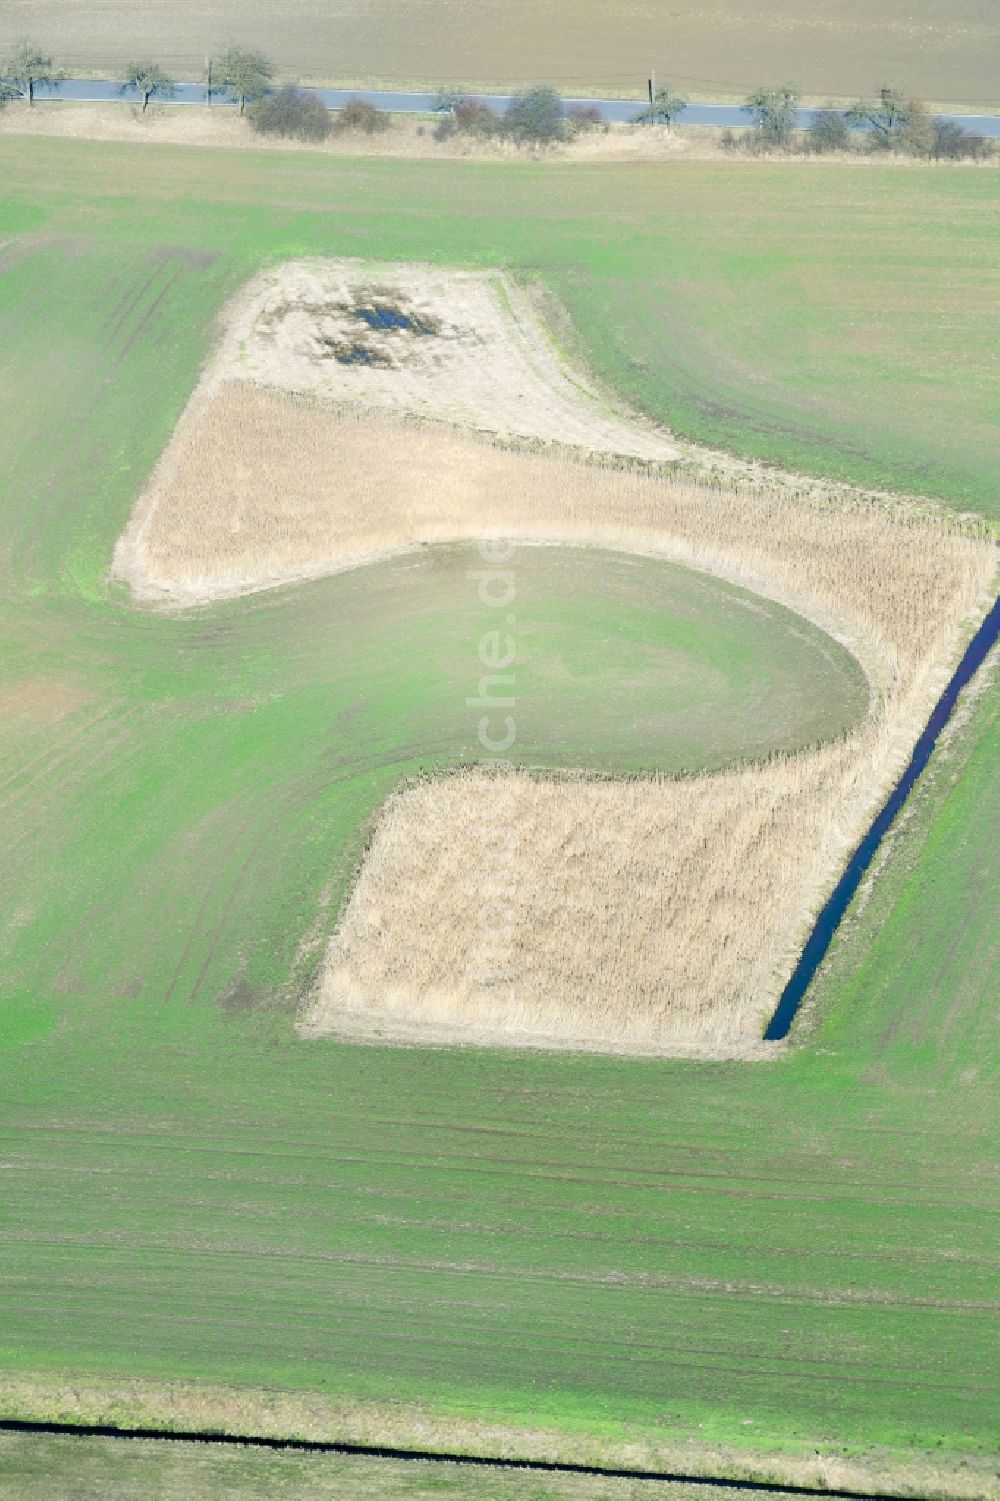 Lieberose aus der Vogelperspektive: Strukturen auf landwirtschaftlichen Feldern in Lieberose im Bundesland Brandenburg, Deutschland